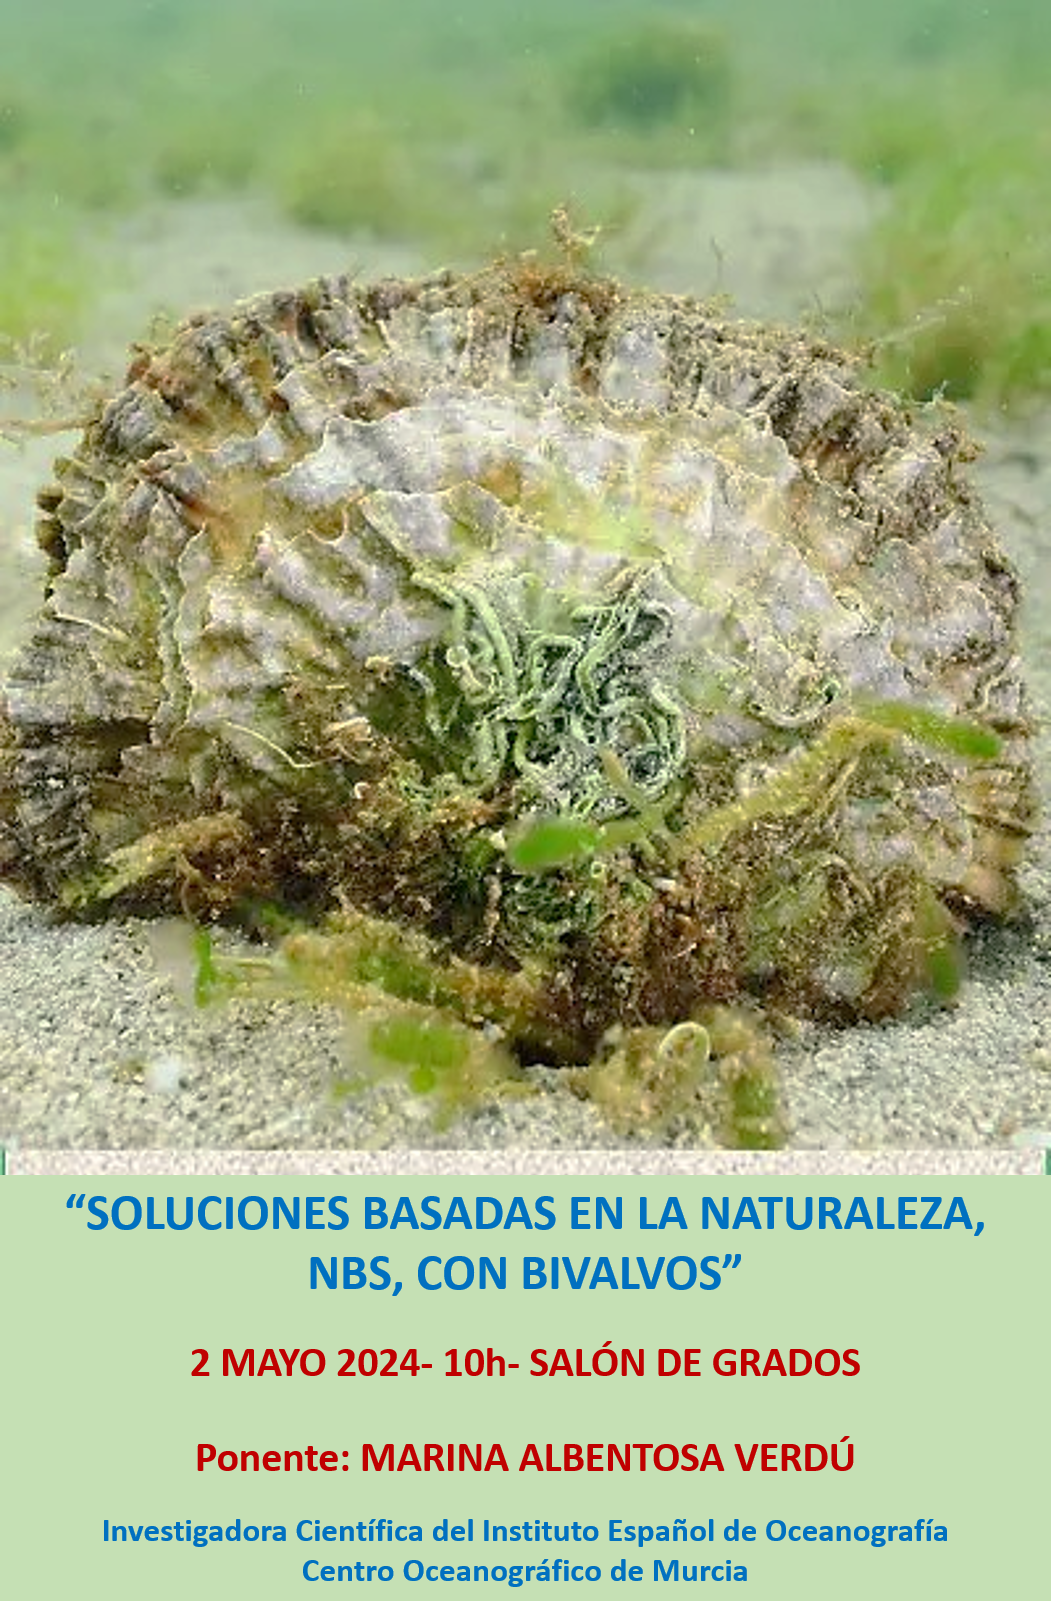 Seminario "Soluciones basadas en la Naturaleza, NbS, con Bivalvos" Marina Albentosa- 2 mayo 2024 - 10h-Salón de Grados